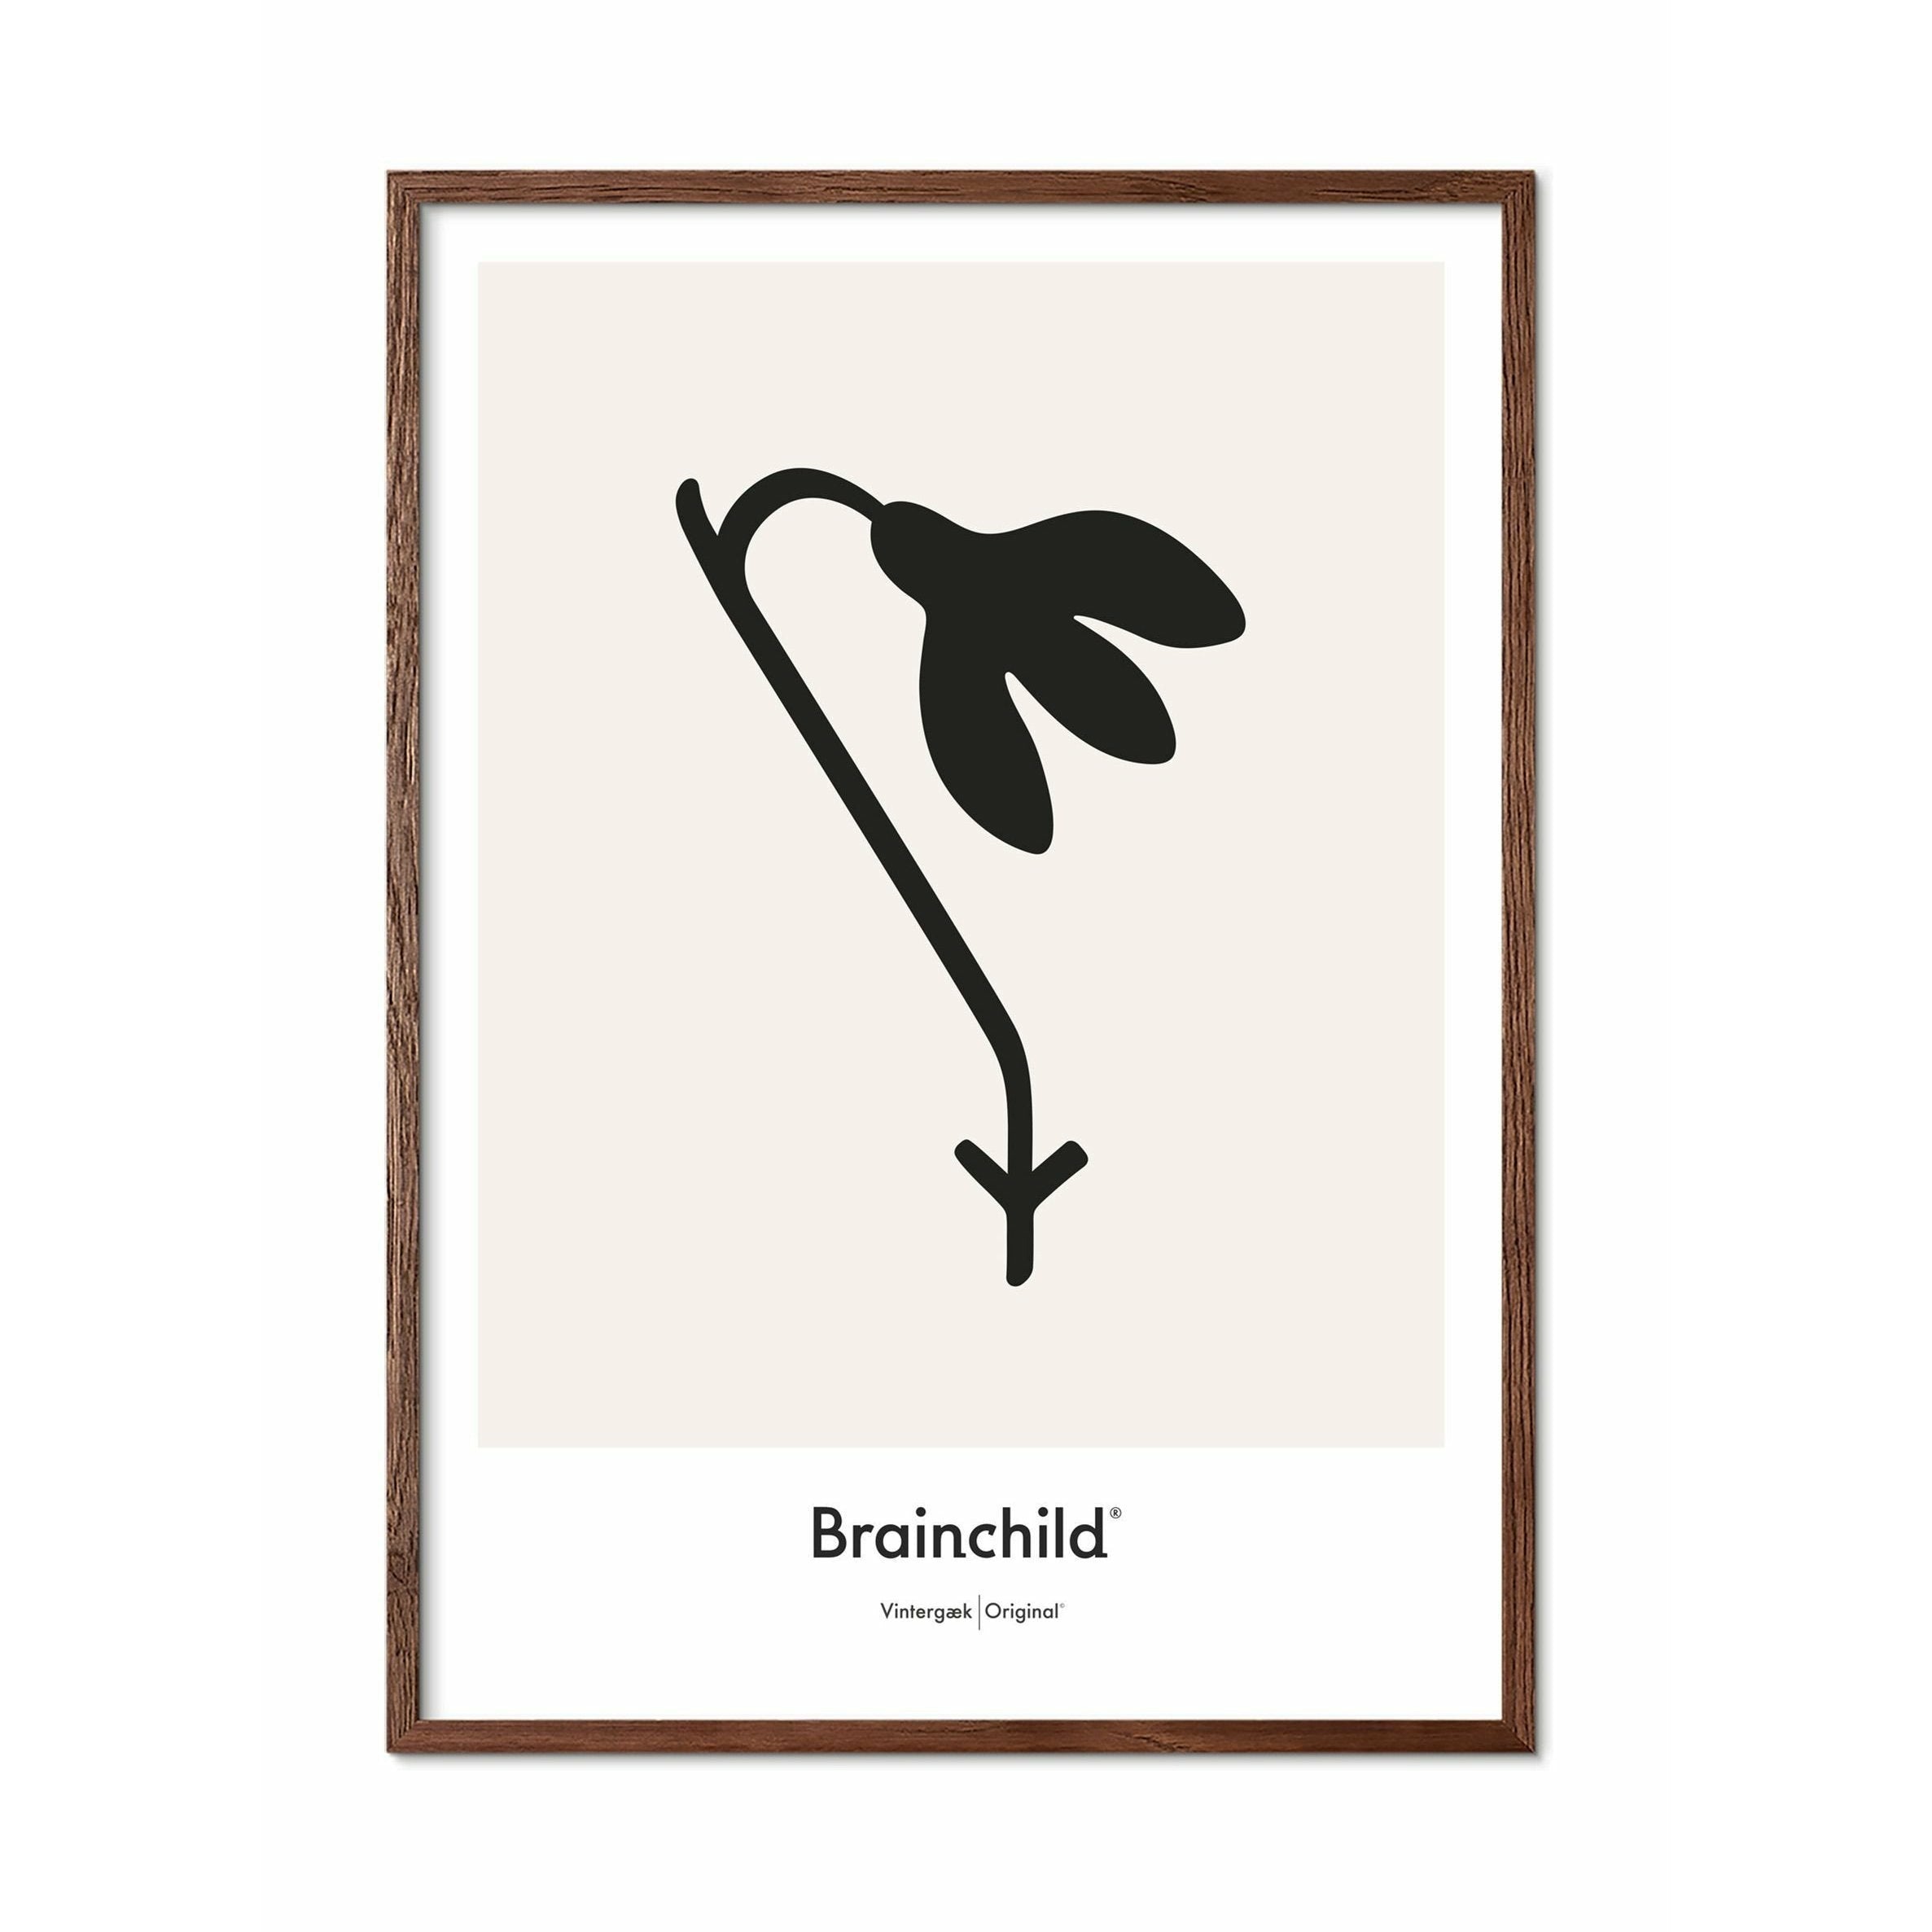 Brainchild Snowdrop Design Icon Poster, Frame Made of Dark Wood 30x40 cm, Gray